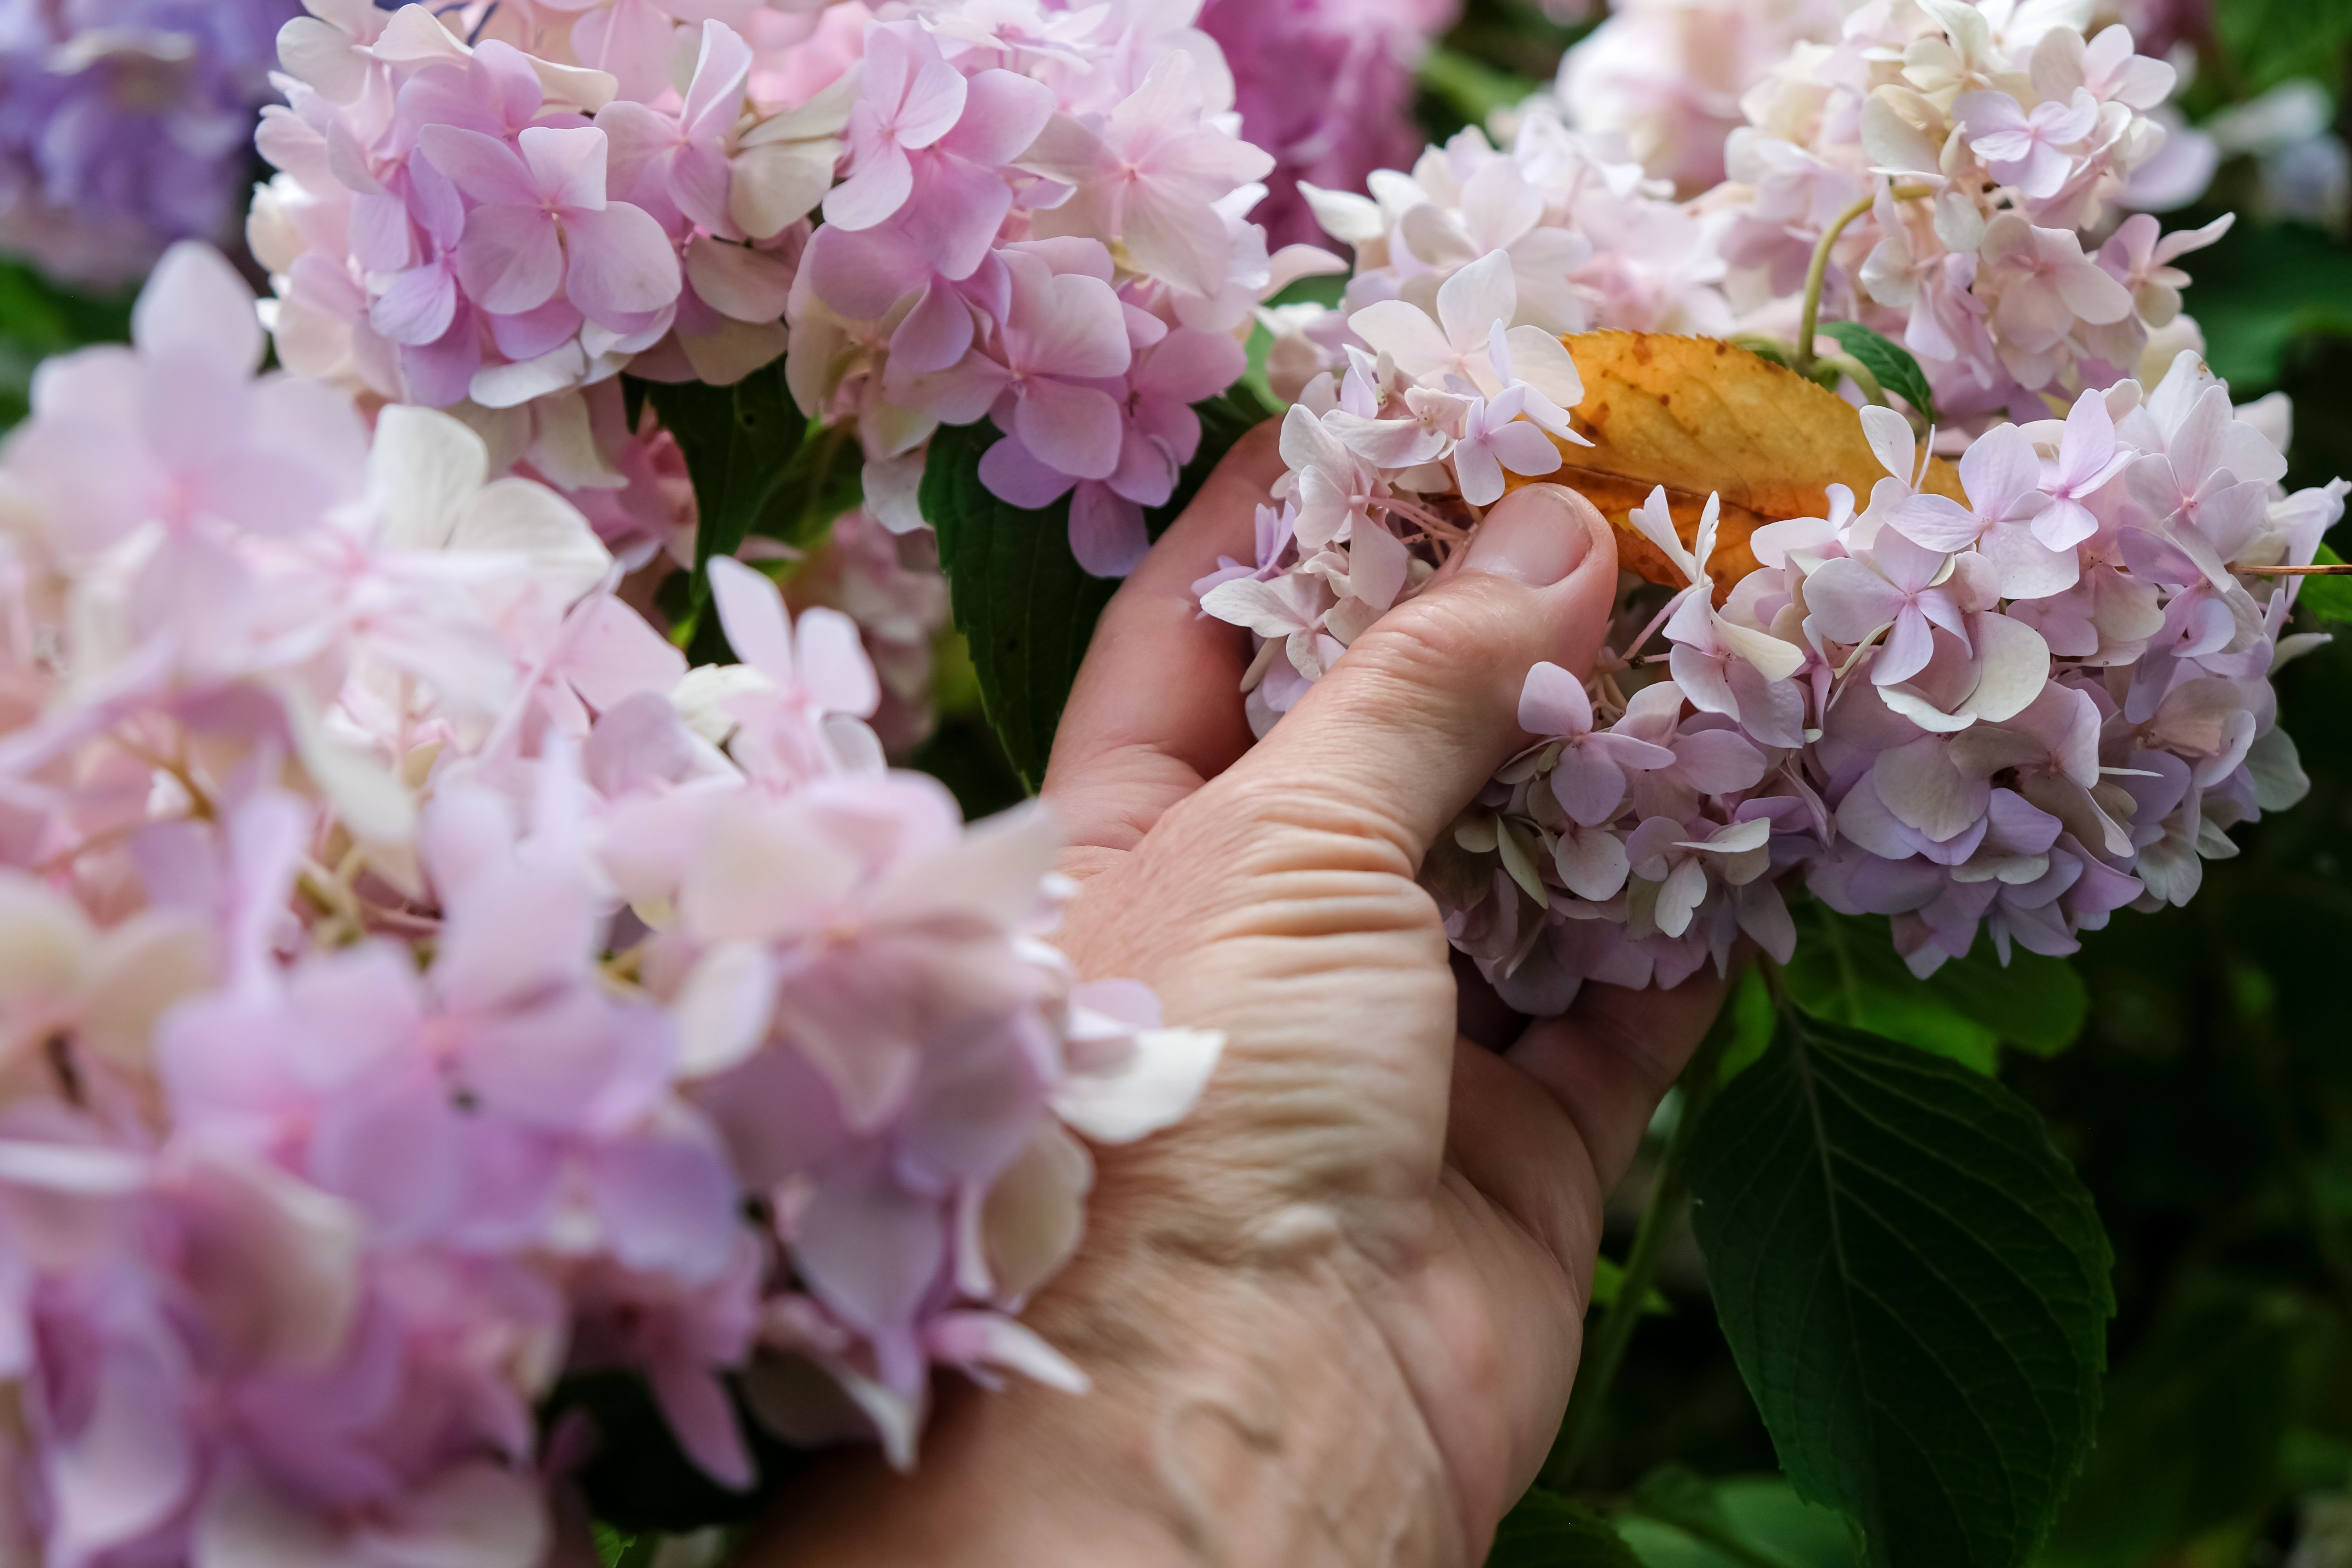 Hand feeling hydrangea blooms